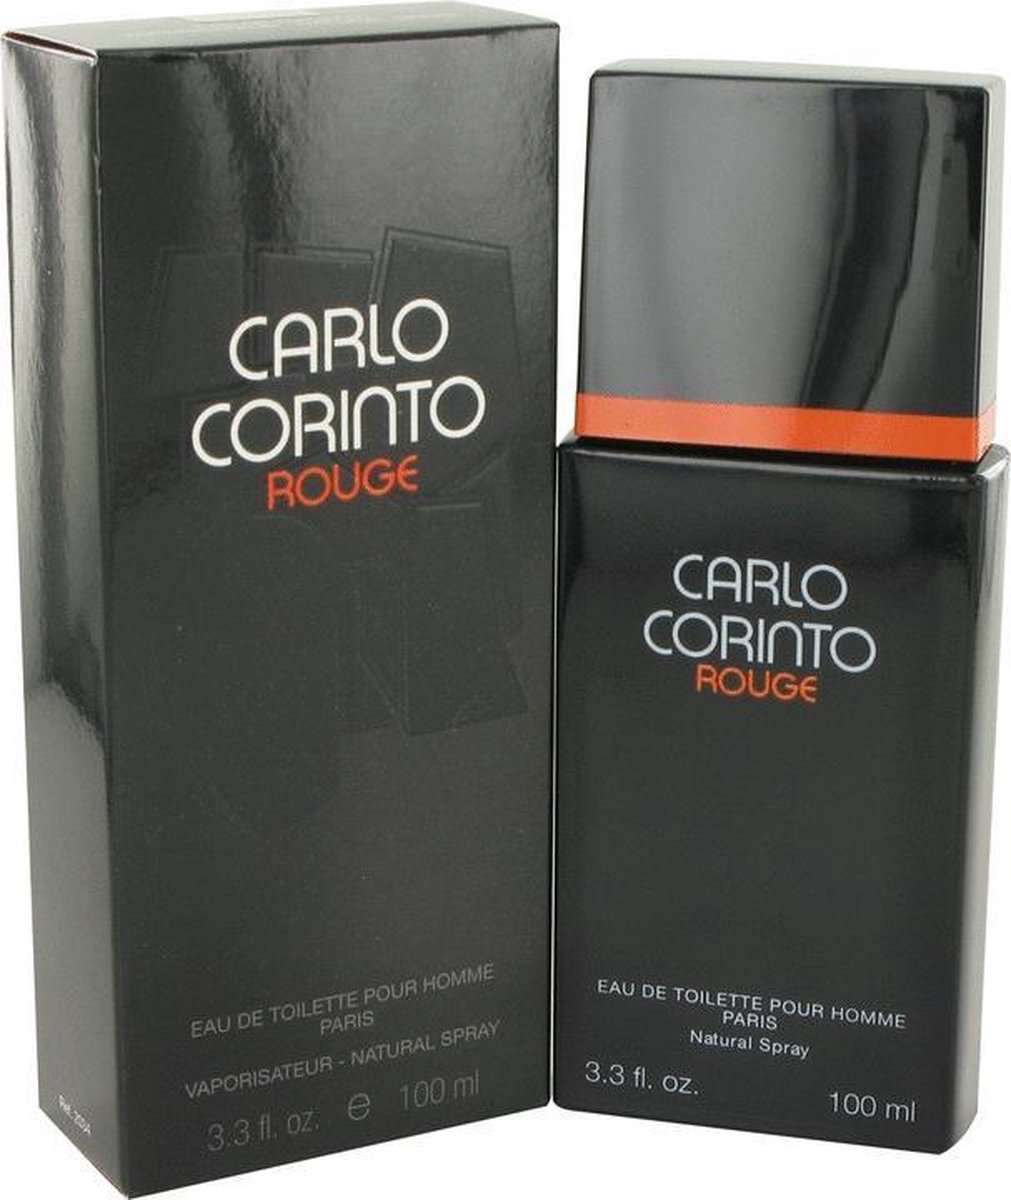 CARLO CORINTO ROUGE by Carlo Corinto 100 ml - Eau De Toilette Spray